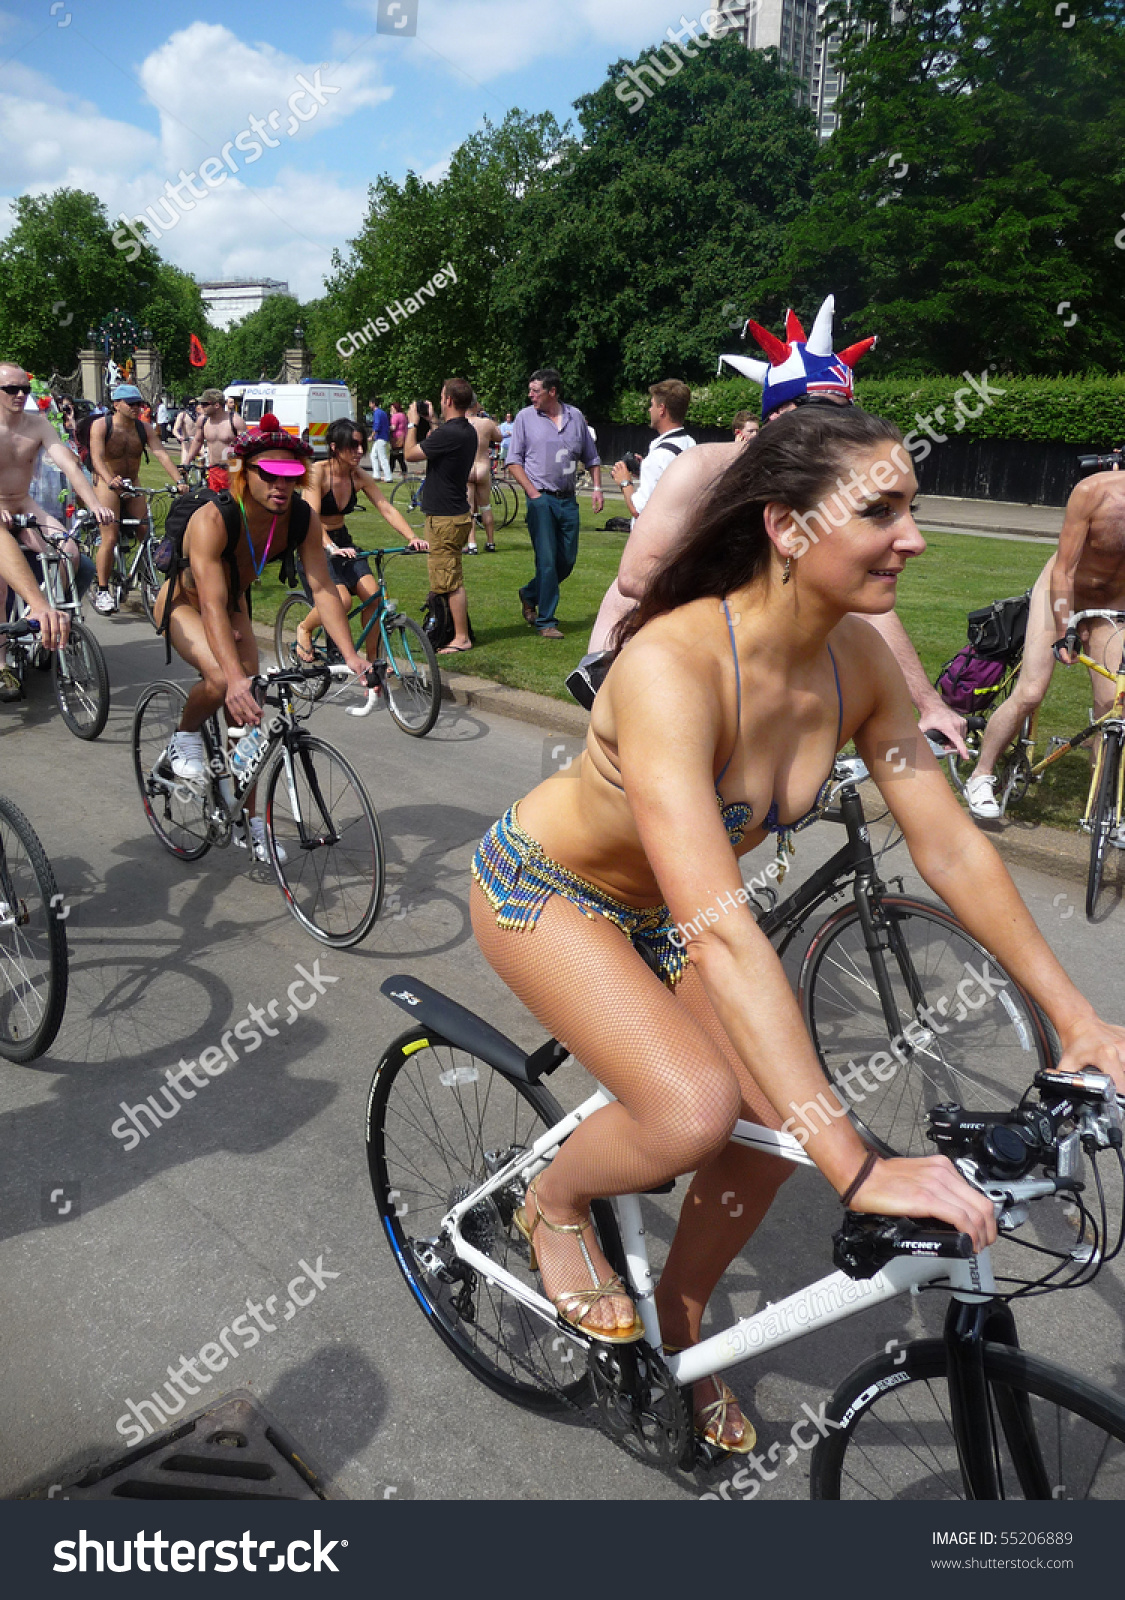 Naked bike ride hot girl